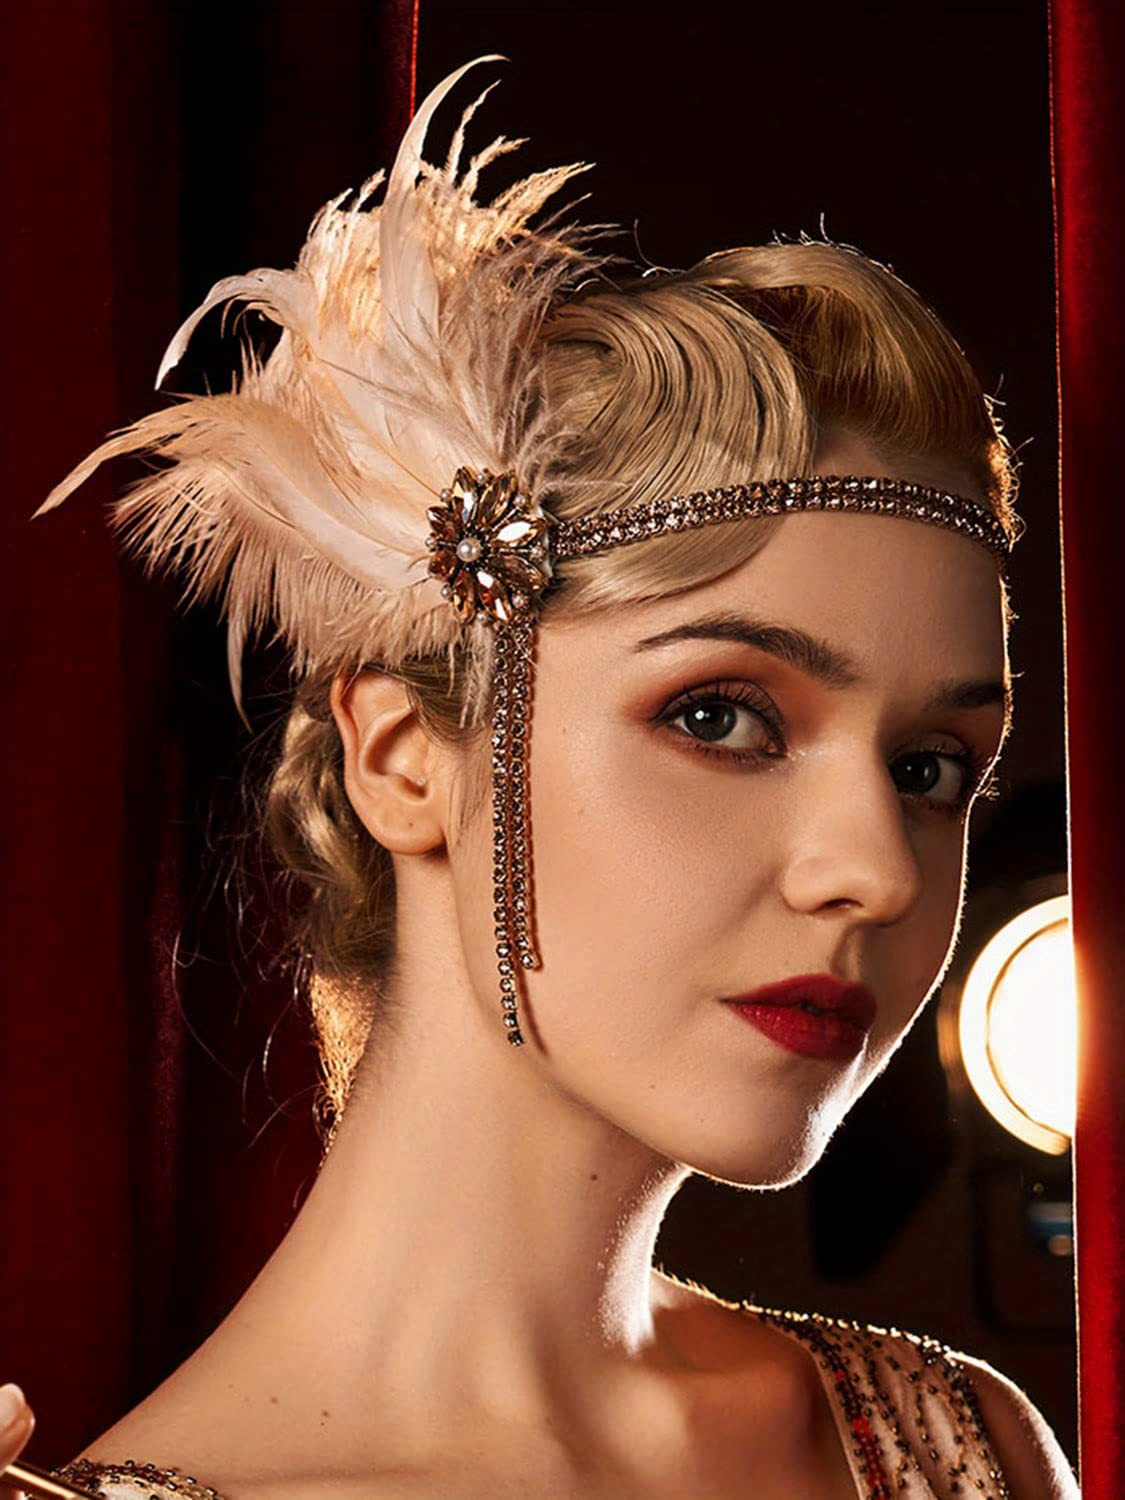 Bandeau de plumes blanches des années 1920 Vintage des années 20 avec  cristal pour femme Années 1920 Flapper Headpiece Accessoires pour cheveux  pour Cosplay Costume Party Halloween 